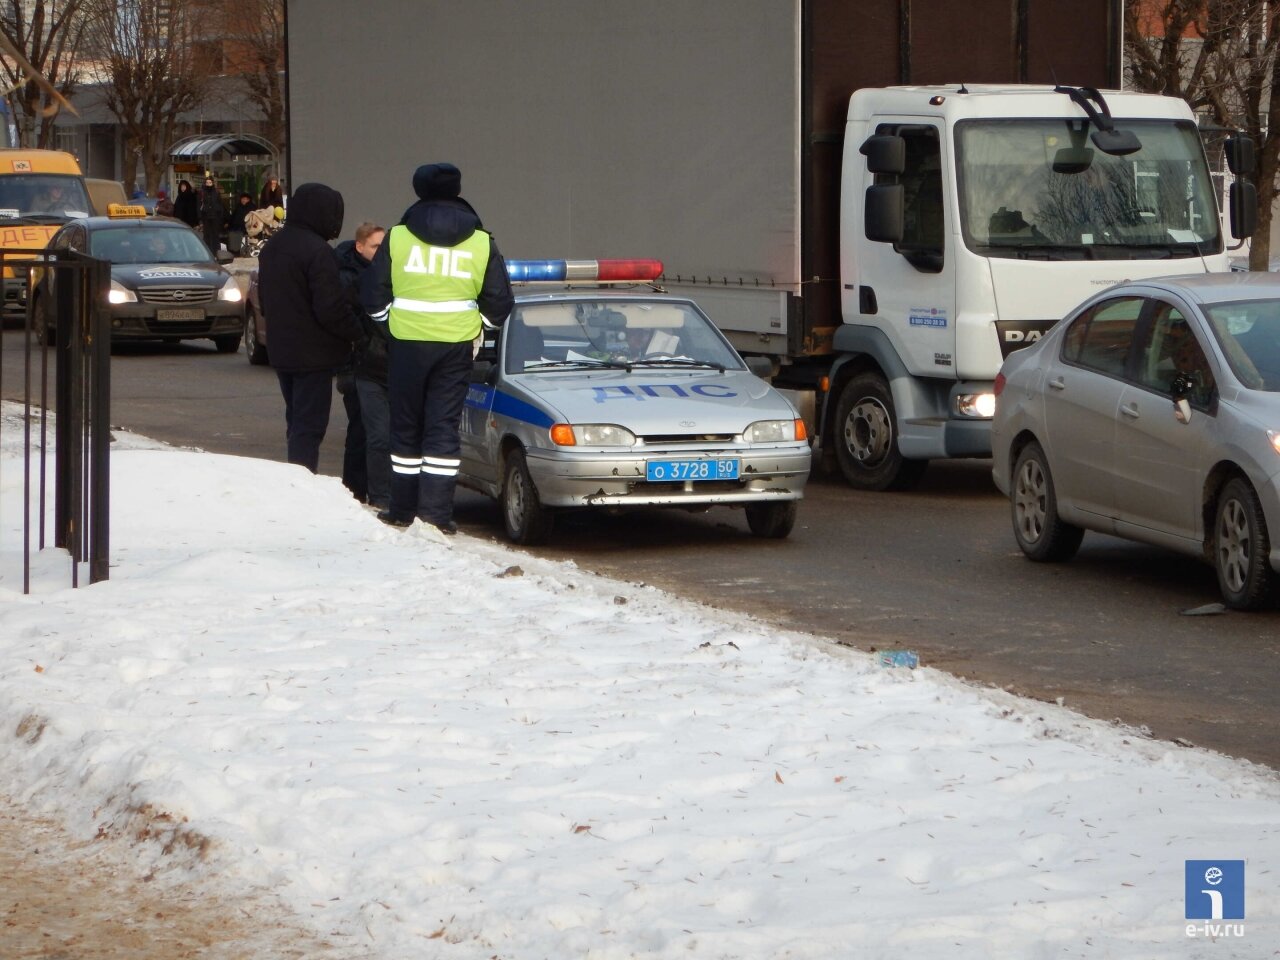 Сотрудник ГИБДД стоит рядом с машиной ДПС, Ивантеевка, Московская область